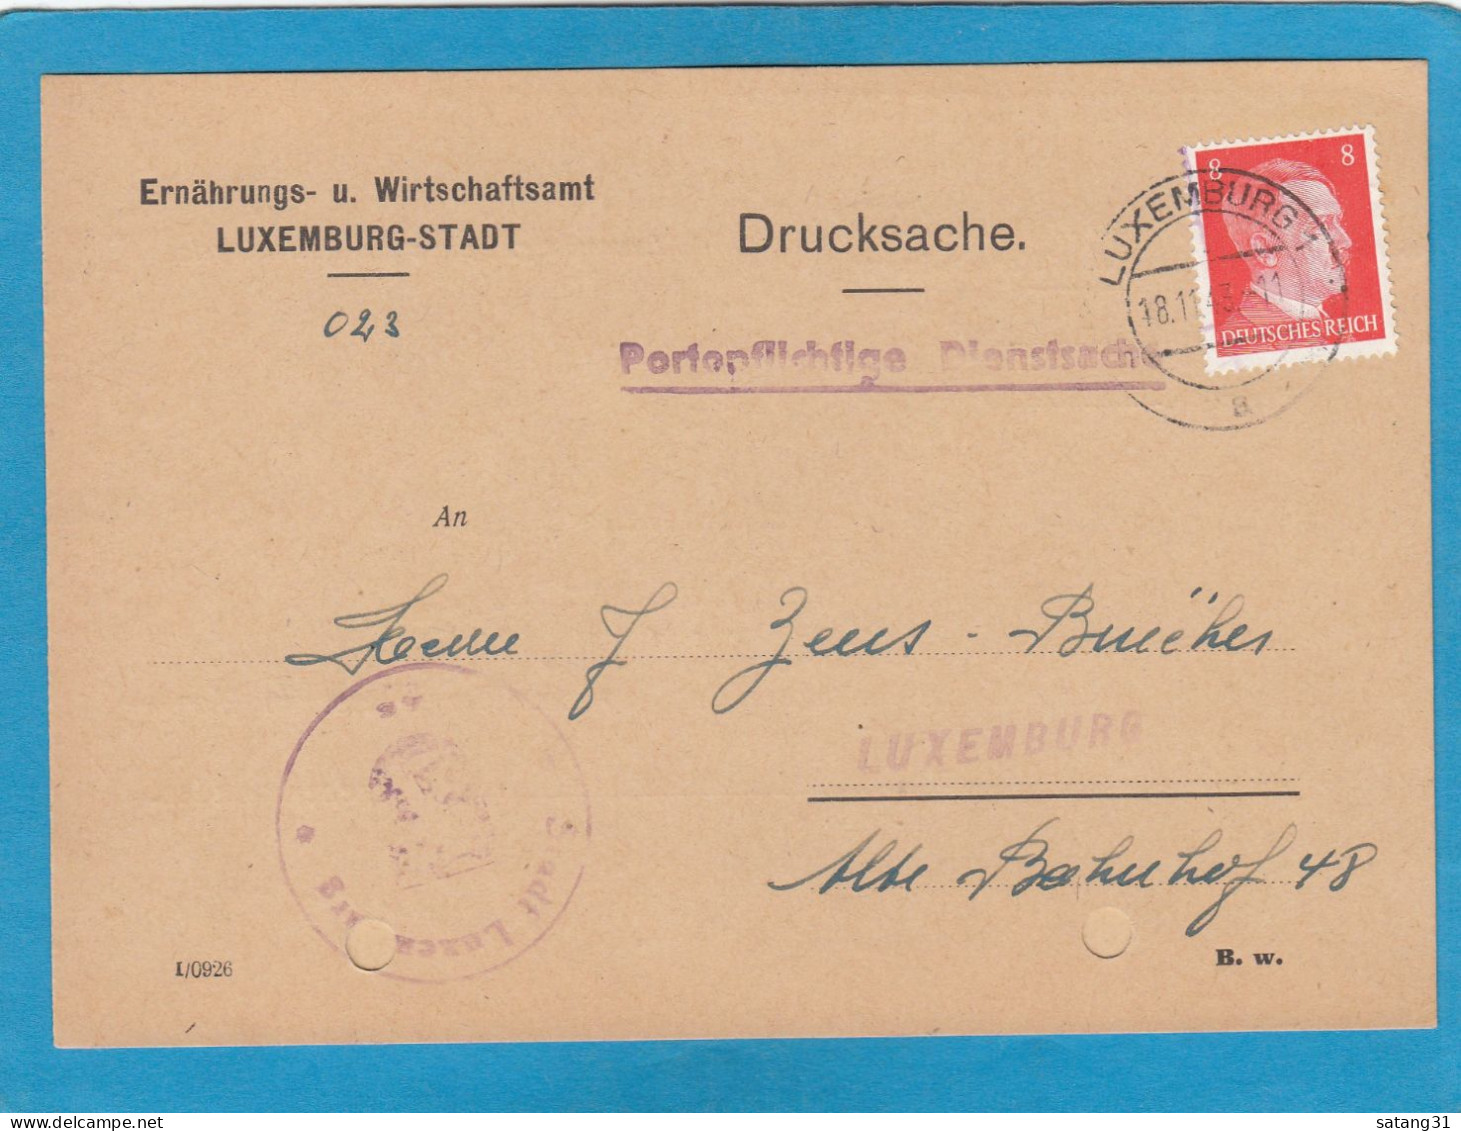 ERNÄHRUNGS- U. WIRTSCHAFTSAMT LUXEMBURG-STADT. - 1940-1944 Deutsche Besatzung